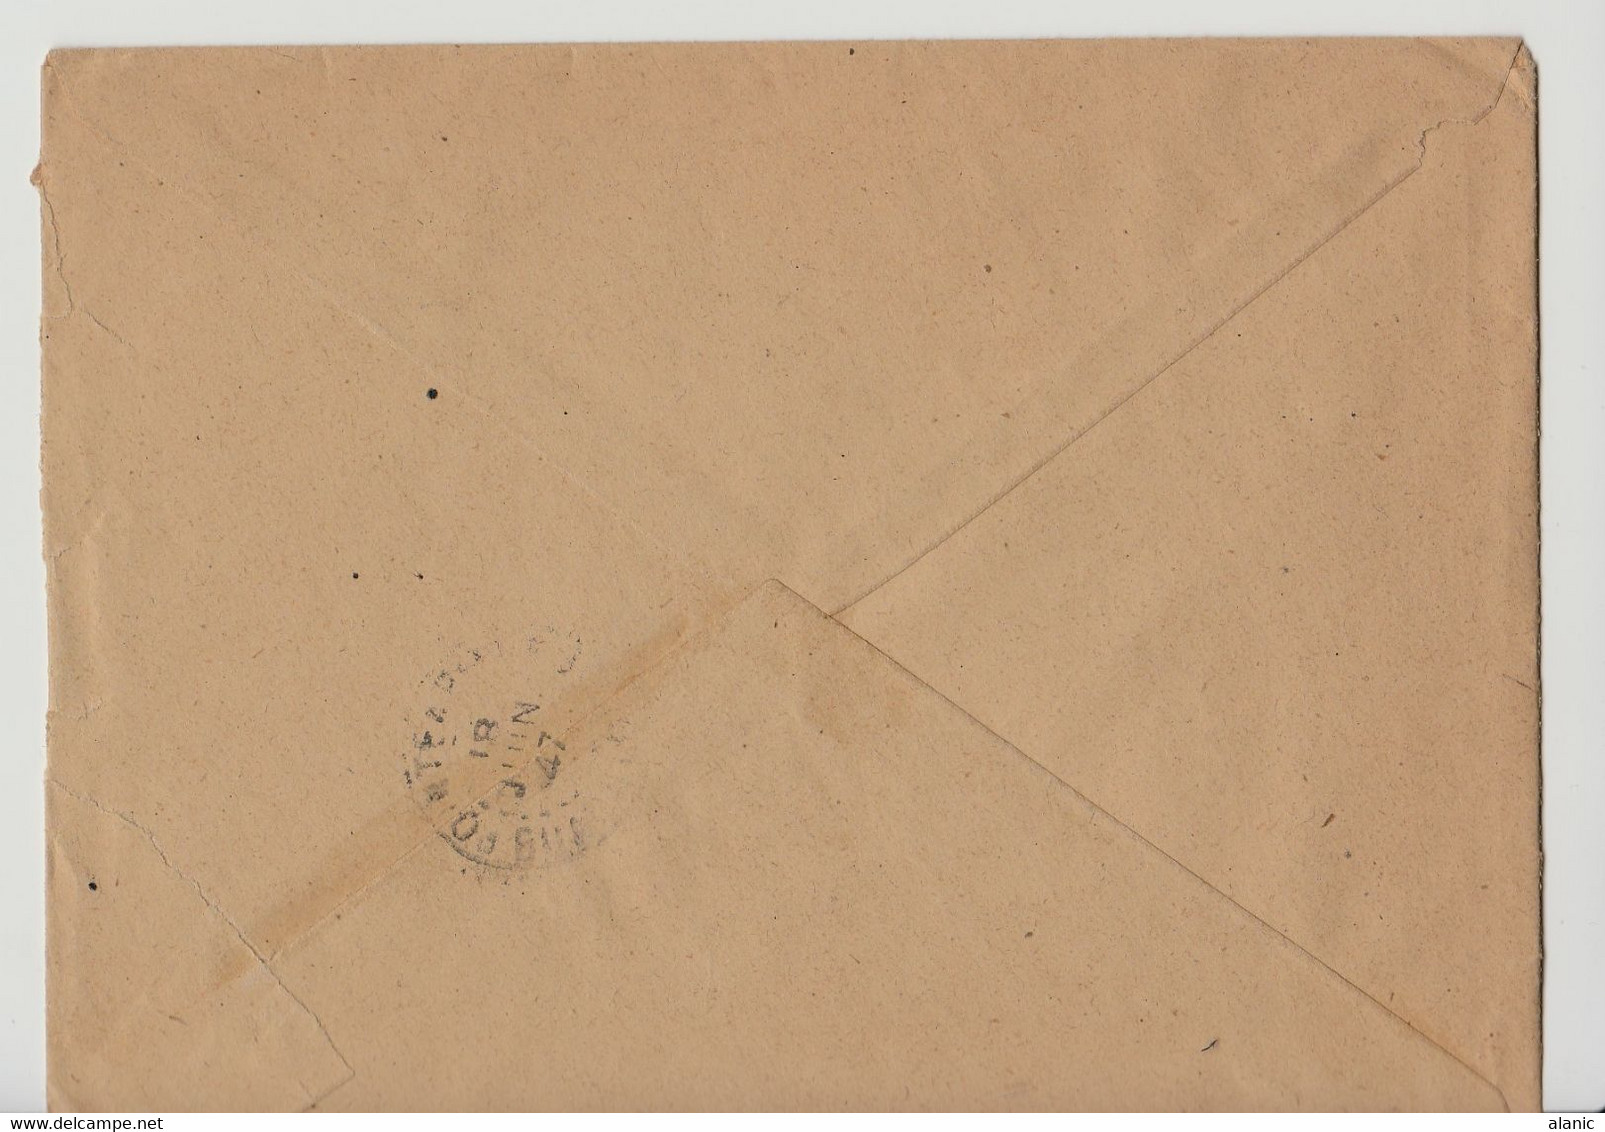 Seul Sur  Lettre N° 200 1947 Pour Paris - Cartas & Documentos